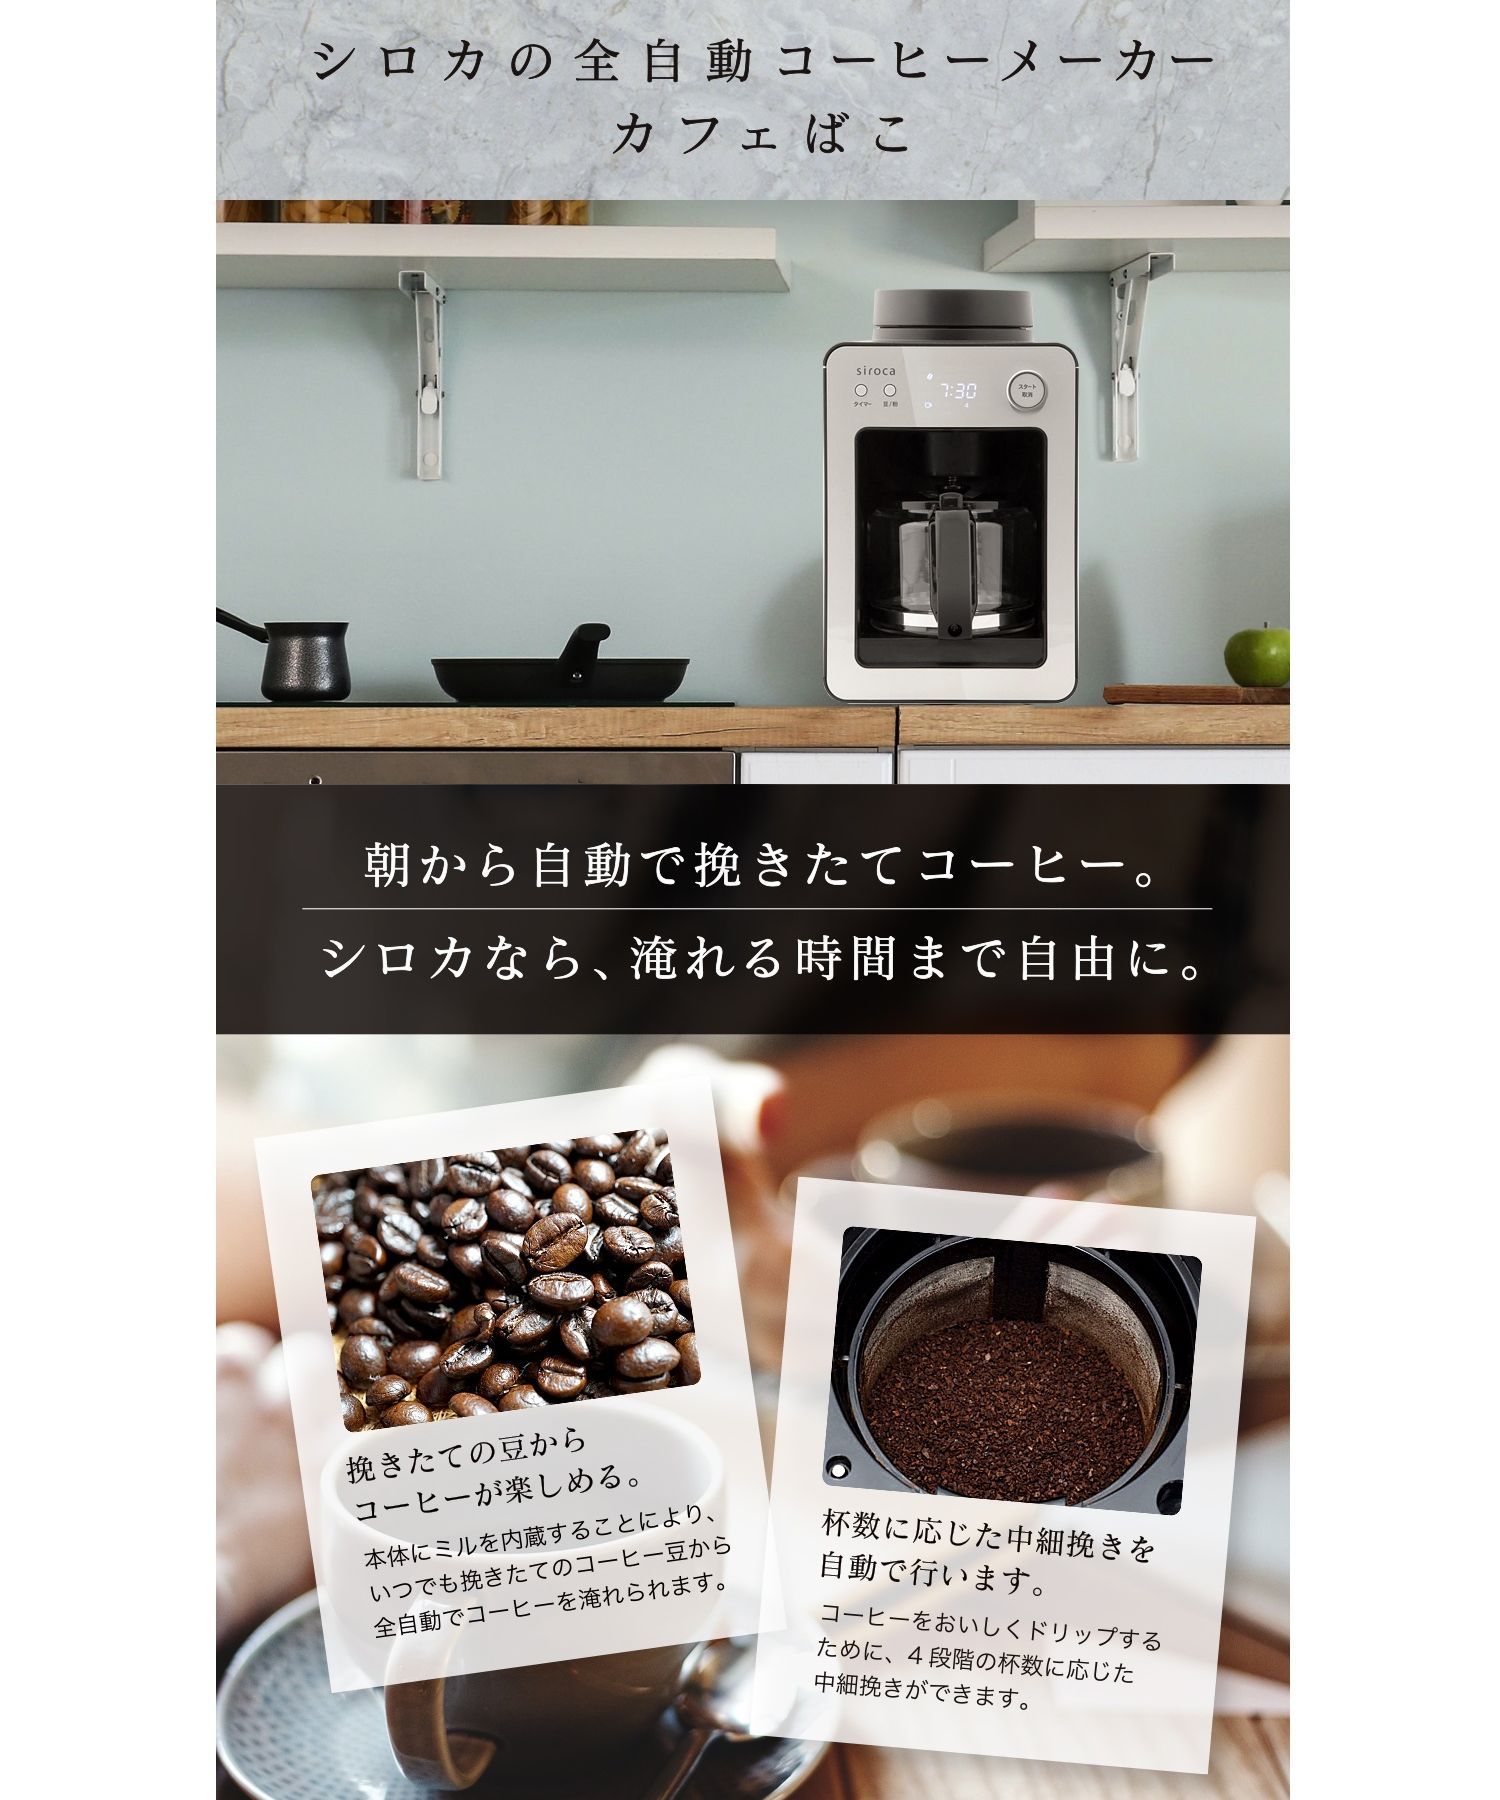 【siroca】全自動コーヒーメーカー カフェばこ(ガラスサーバー) SC-A351 ONE SIZE